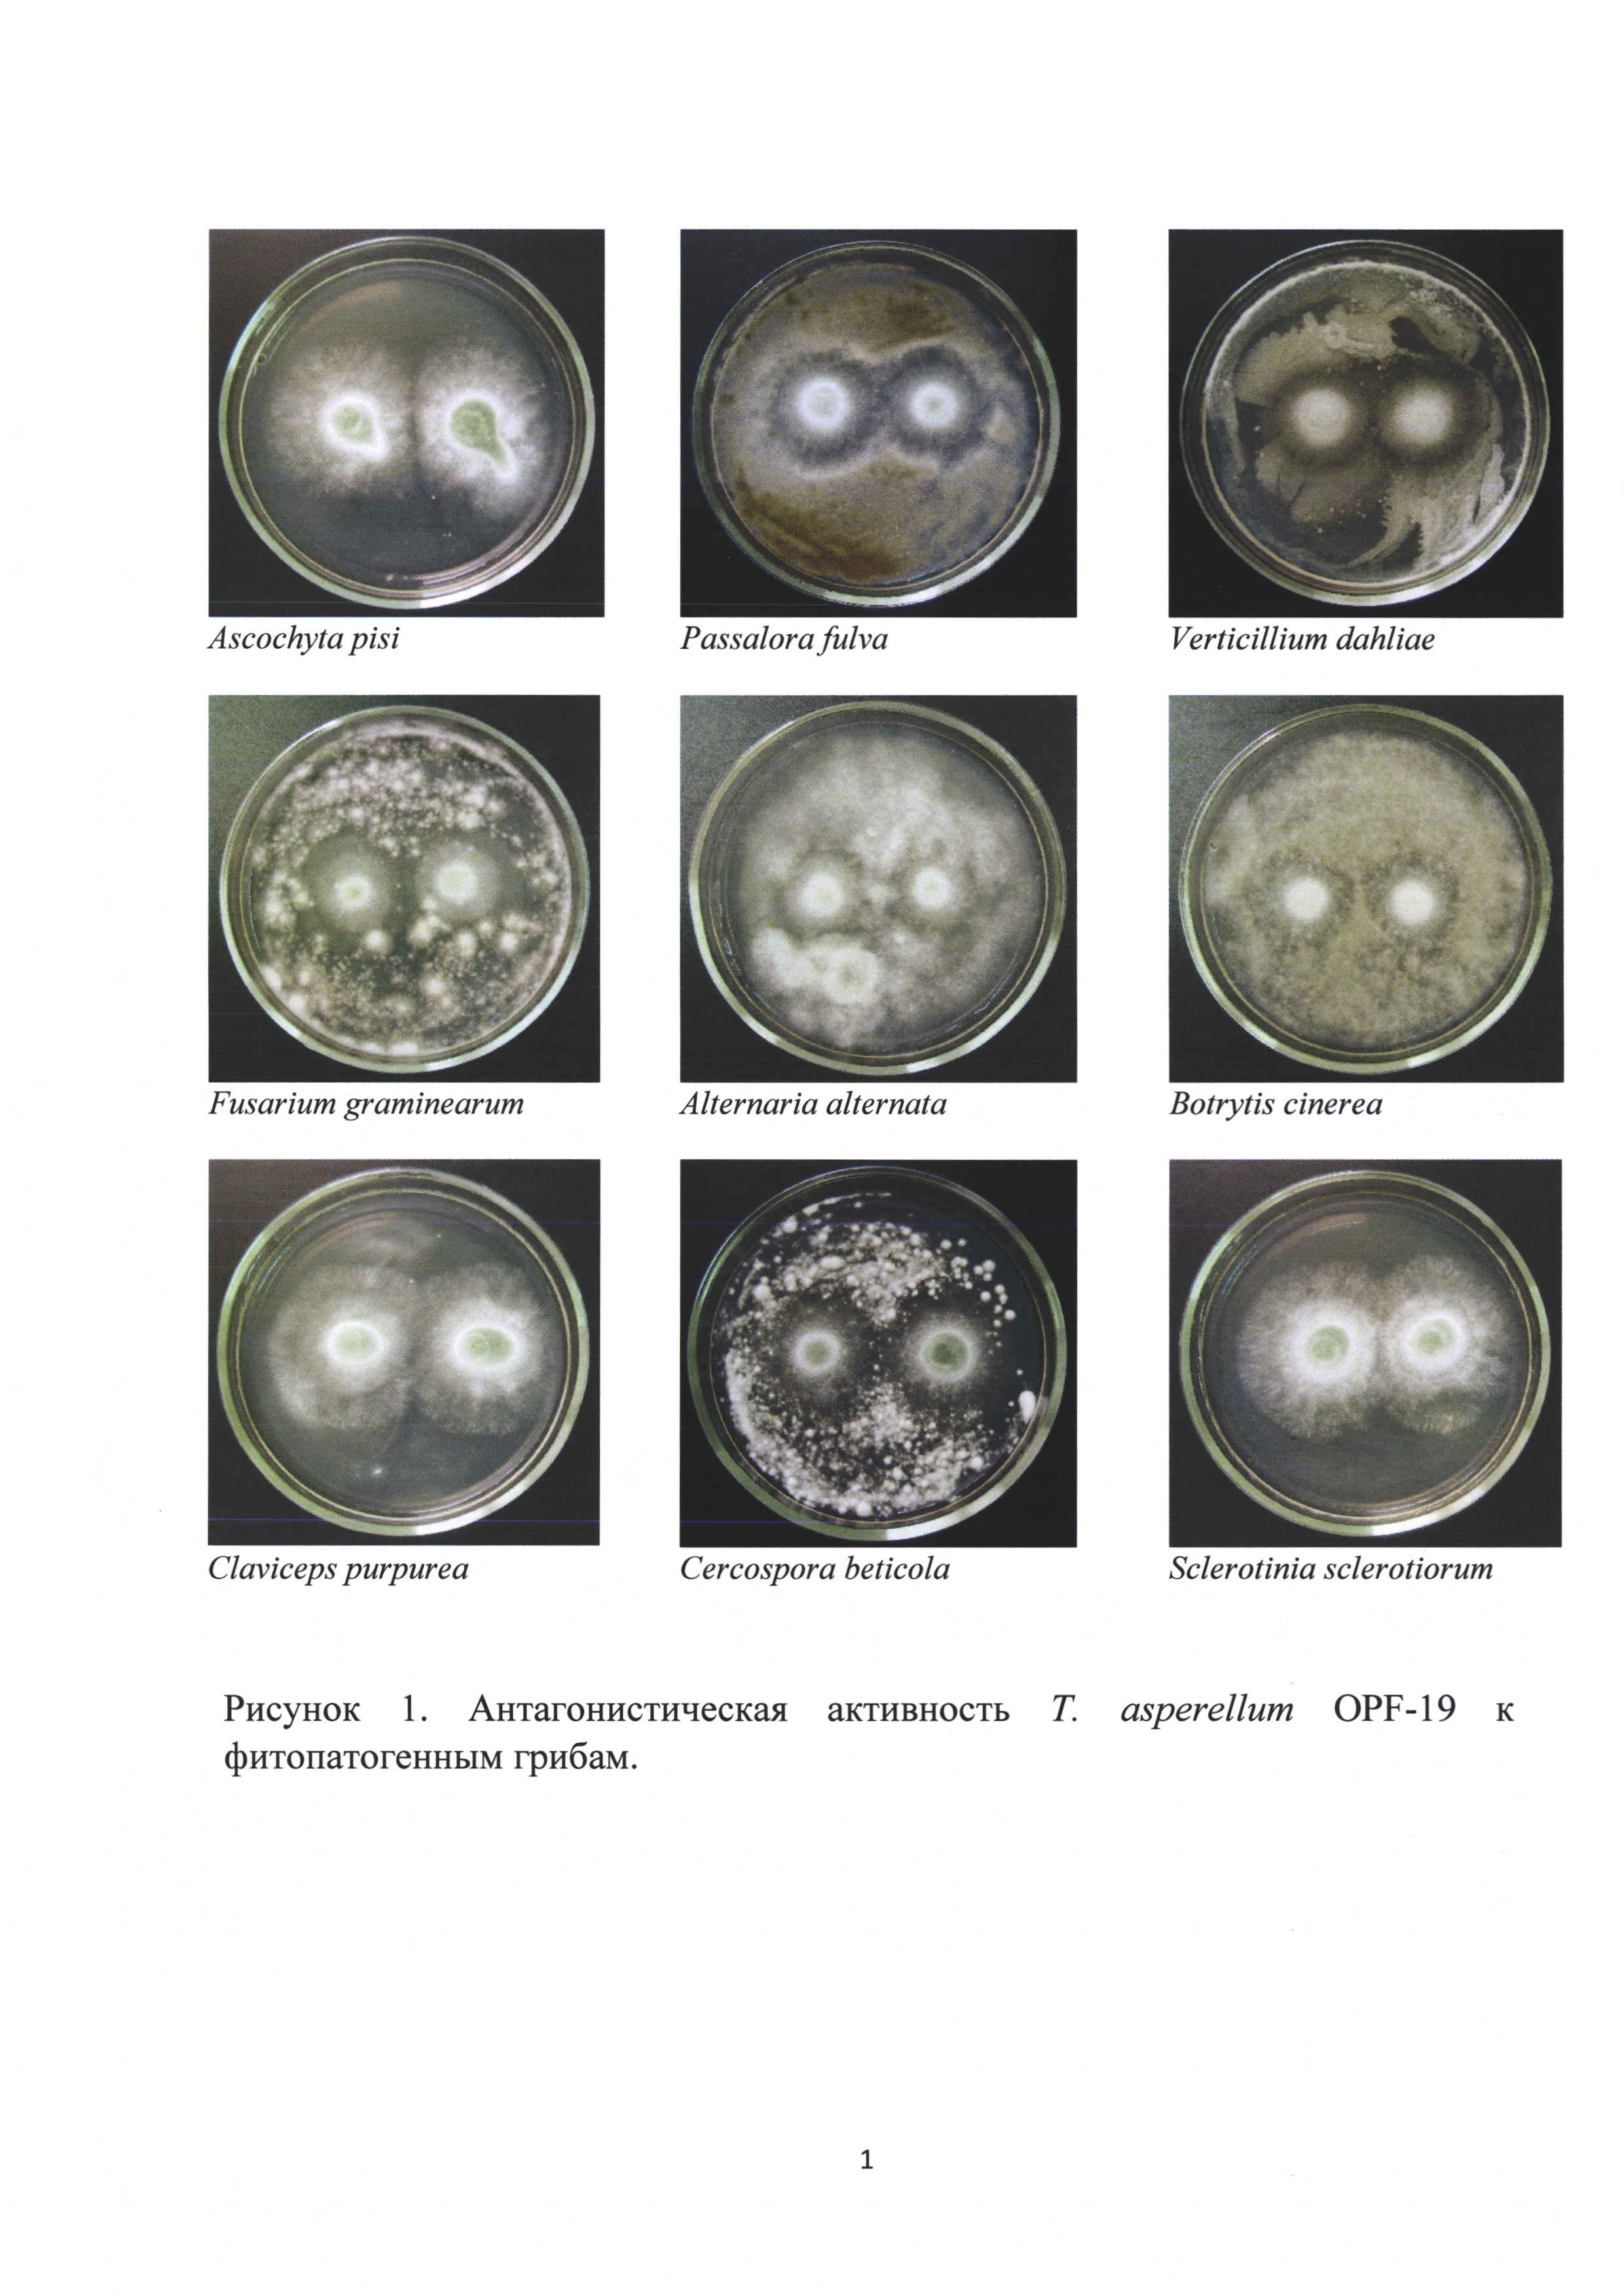 Штамм гриба Trichoderma asperellum для получения биопрепарата комплексного действия для растениеводства